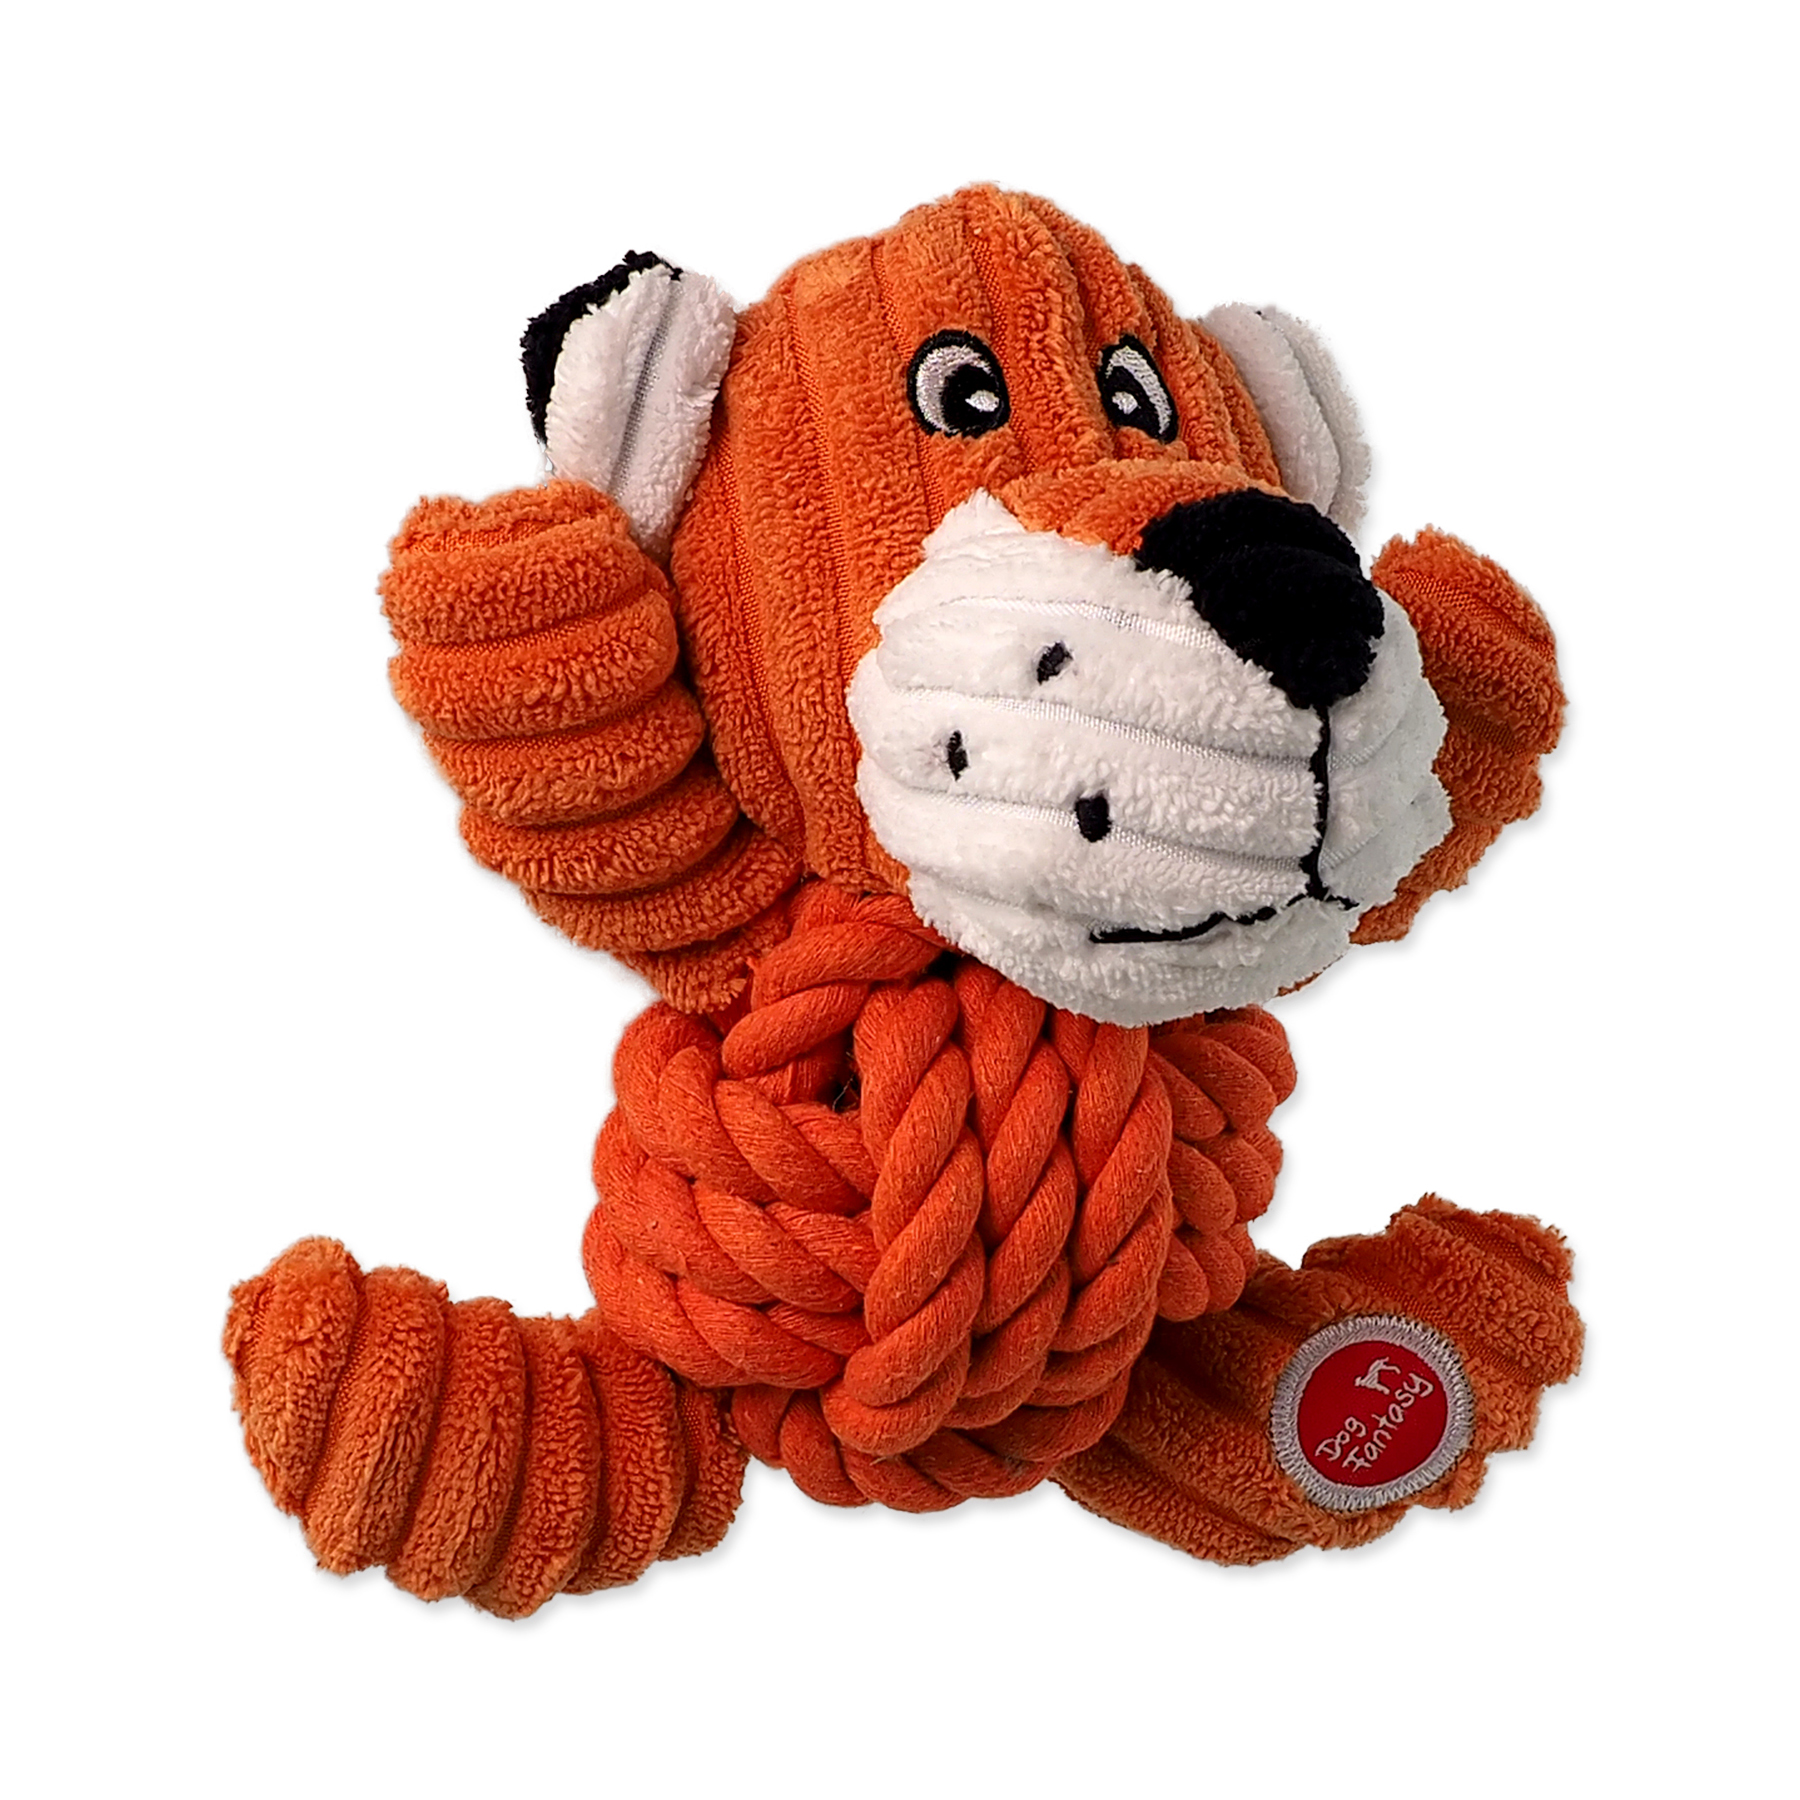 Dog Fantasy Hračka Safari tygr s uzlem pískací 18 cm Dog Fantasy